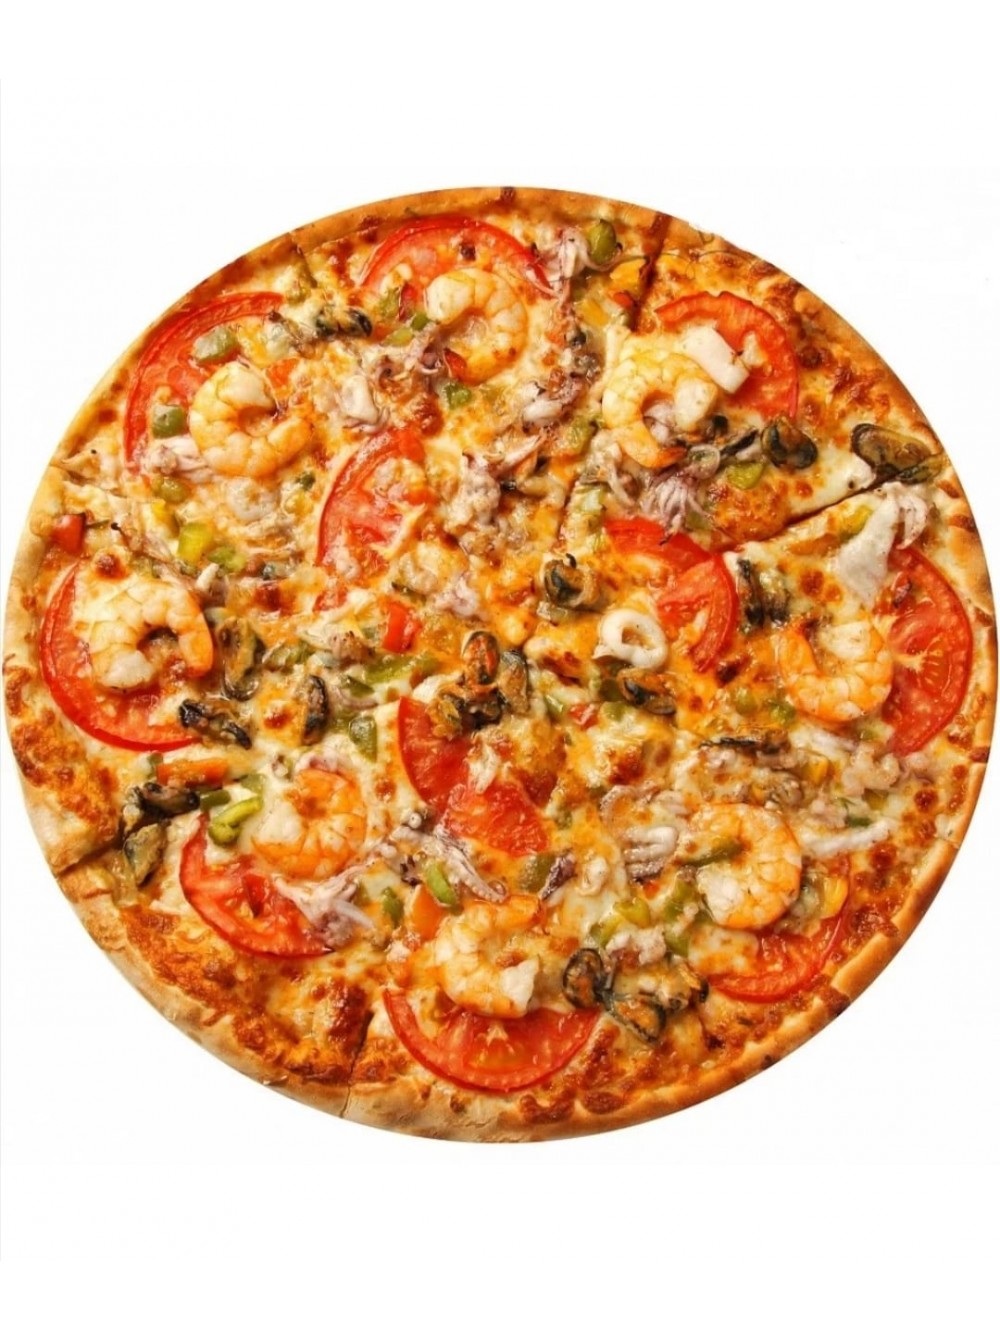 что входит в состав пиццы с морепродуктами фото 71